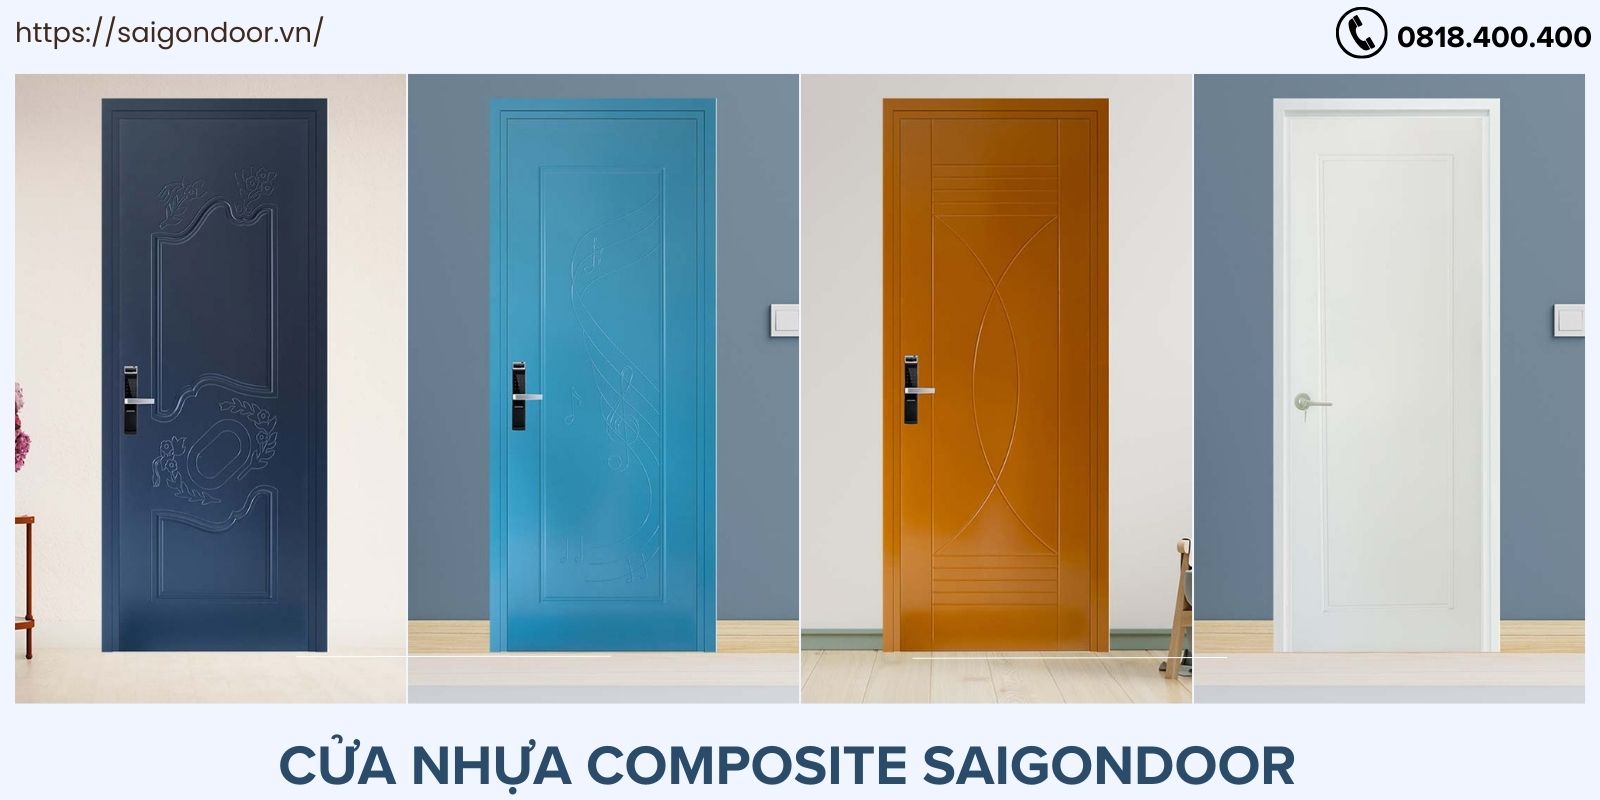 Mua cửa nhựa gỗ composite tại Sài Gòn Door với hơn 15 năm kinh nghiệm 